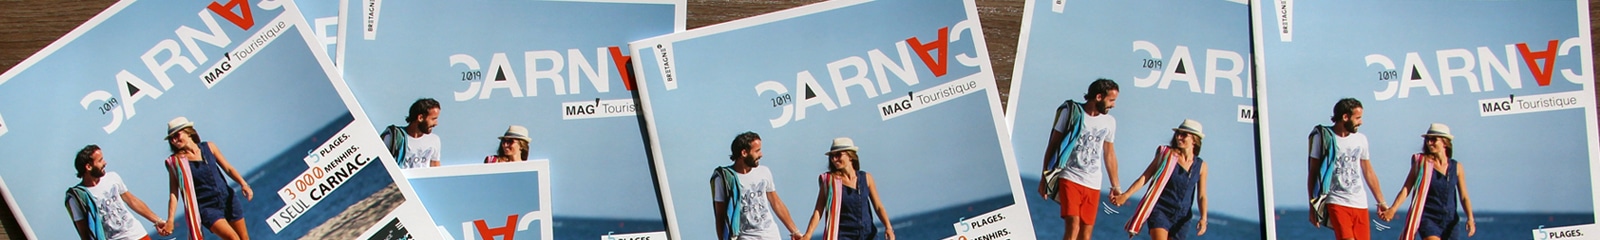 Mag' touristique édité par l'OT Carnac